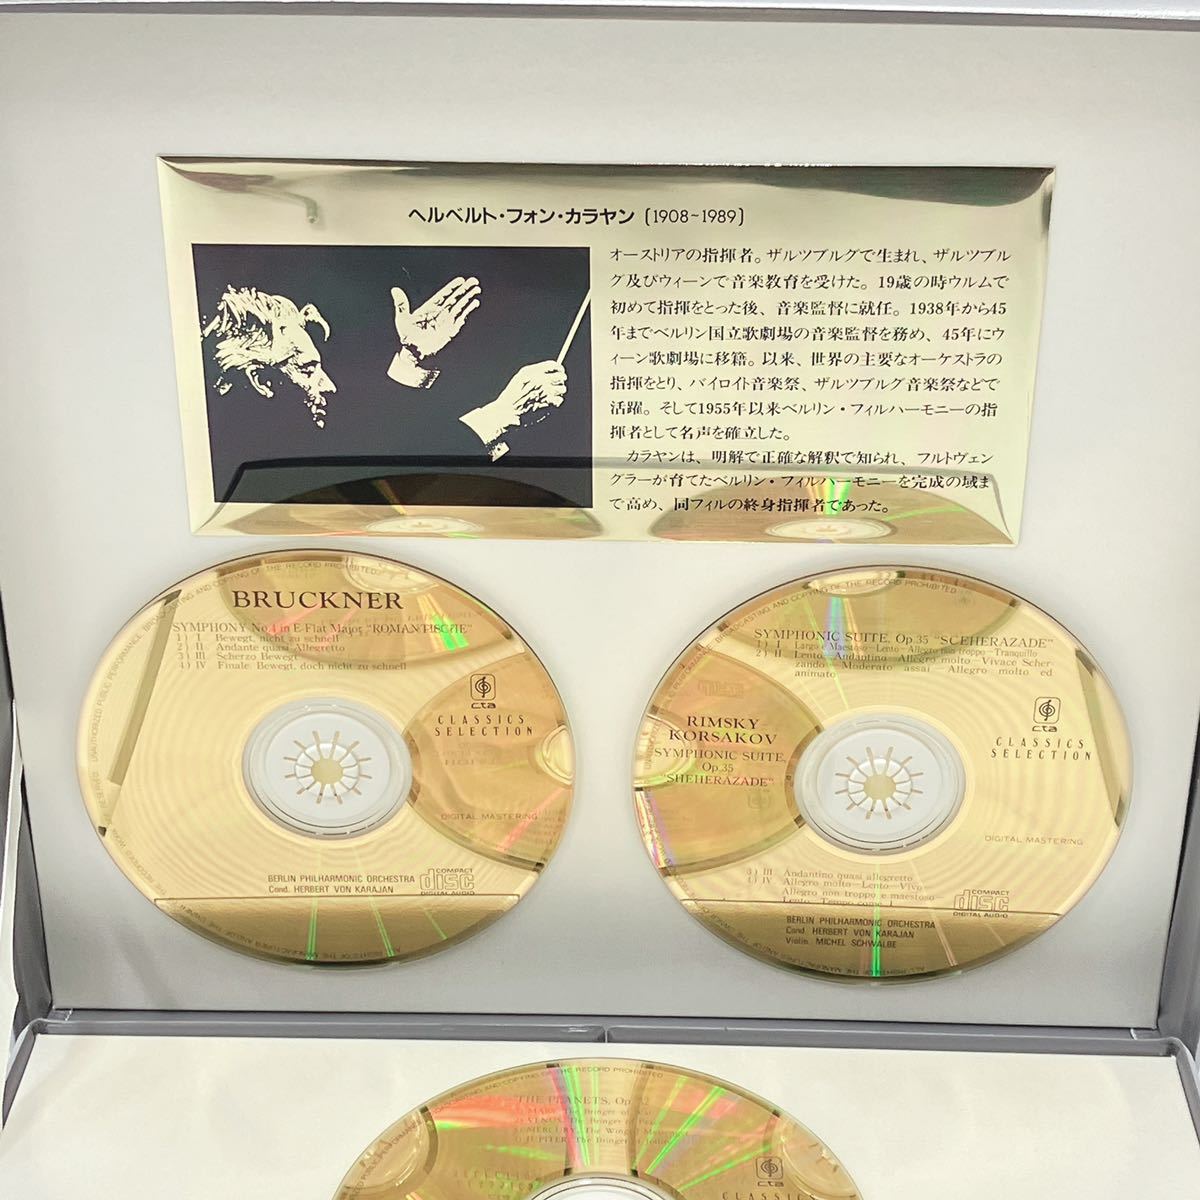 音出しOK ヘルベルト フォン カラヤン / Herbert von Karajan 純金CD 